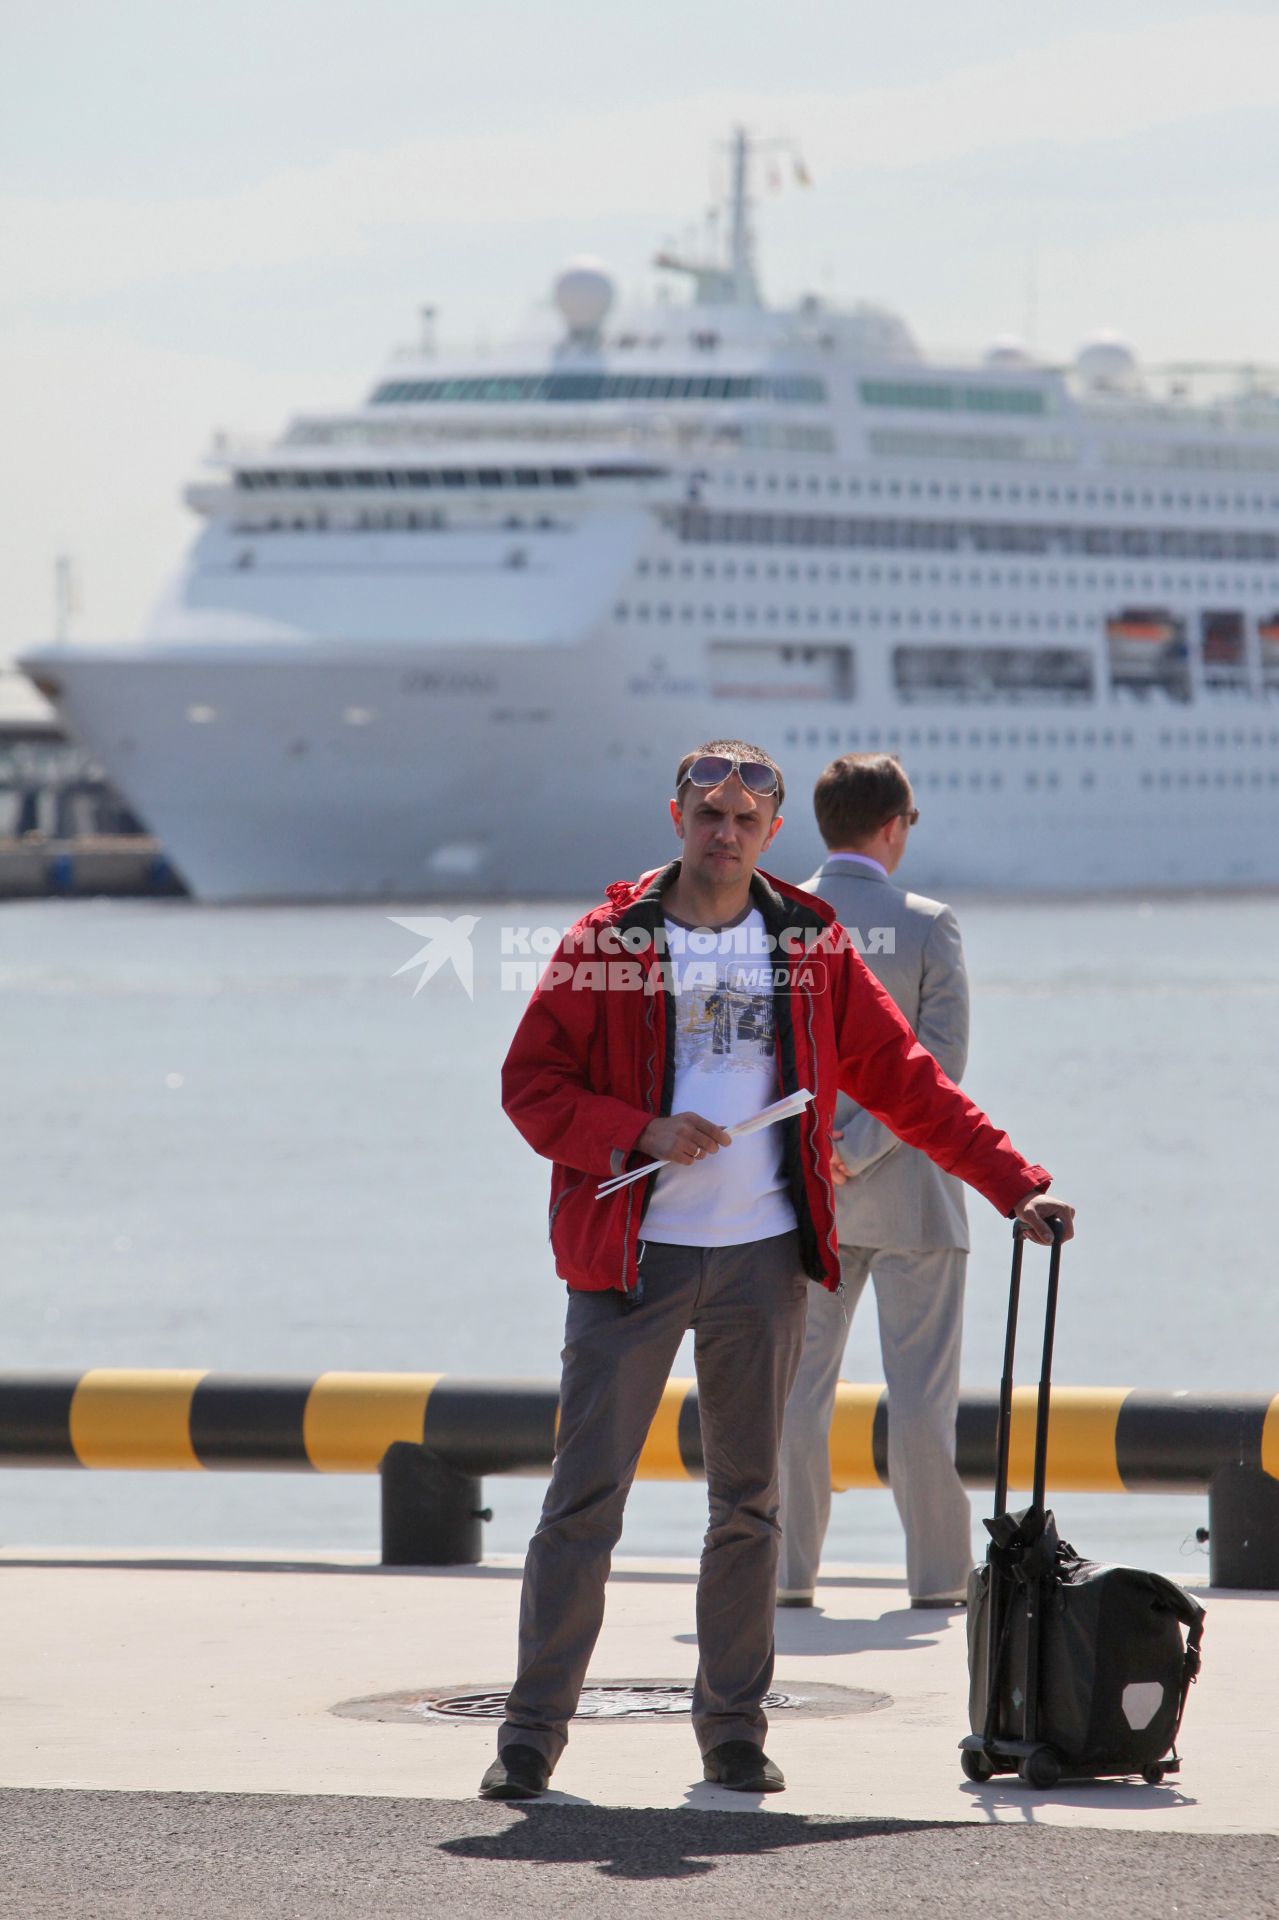 Открытие порта МОРСКОЙ ФАСАД Спб. Мужчина с багажом стоит в порту в ожидании на фоне морского круизного корабля ORIANA. 27 мая 2011 года.